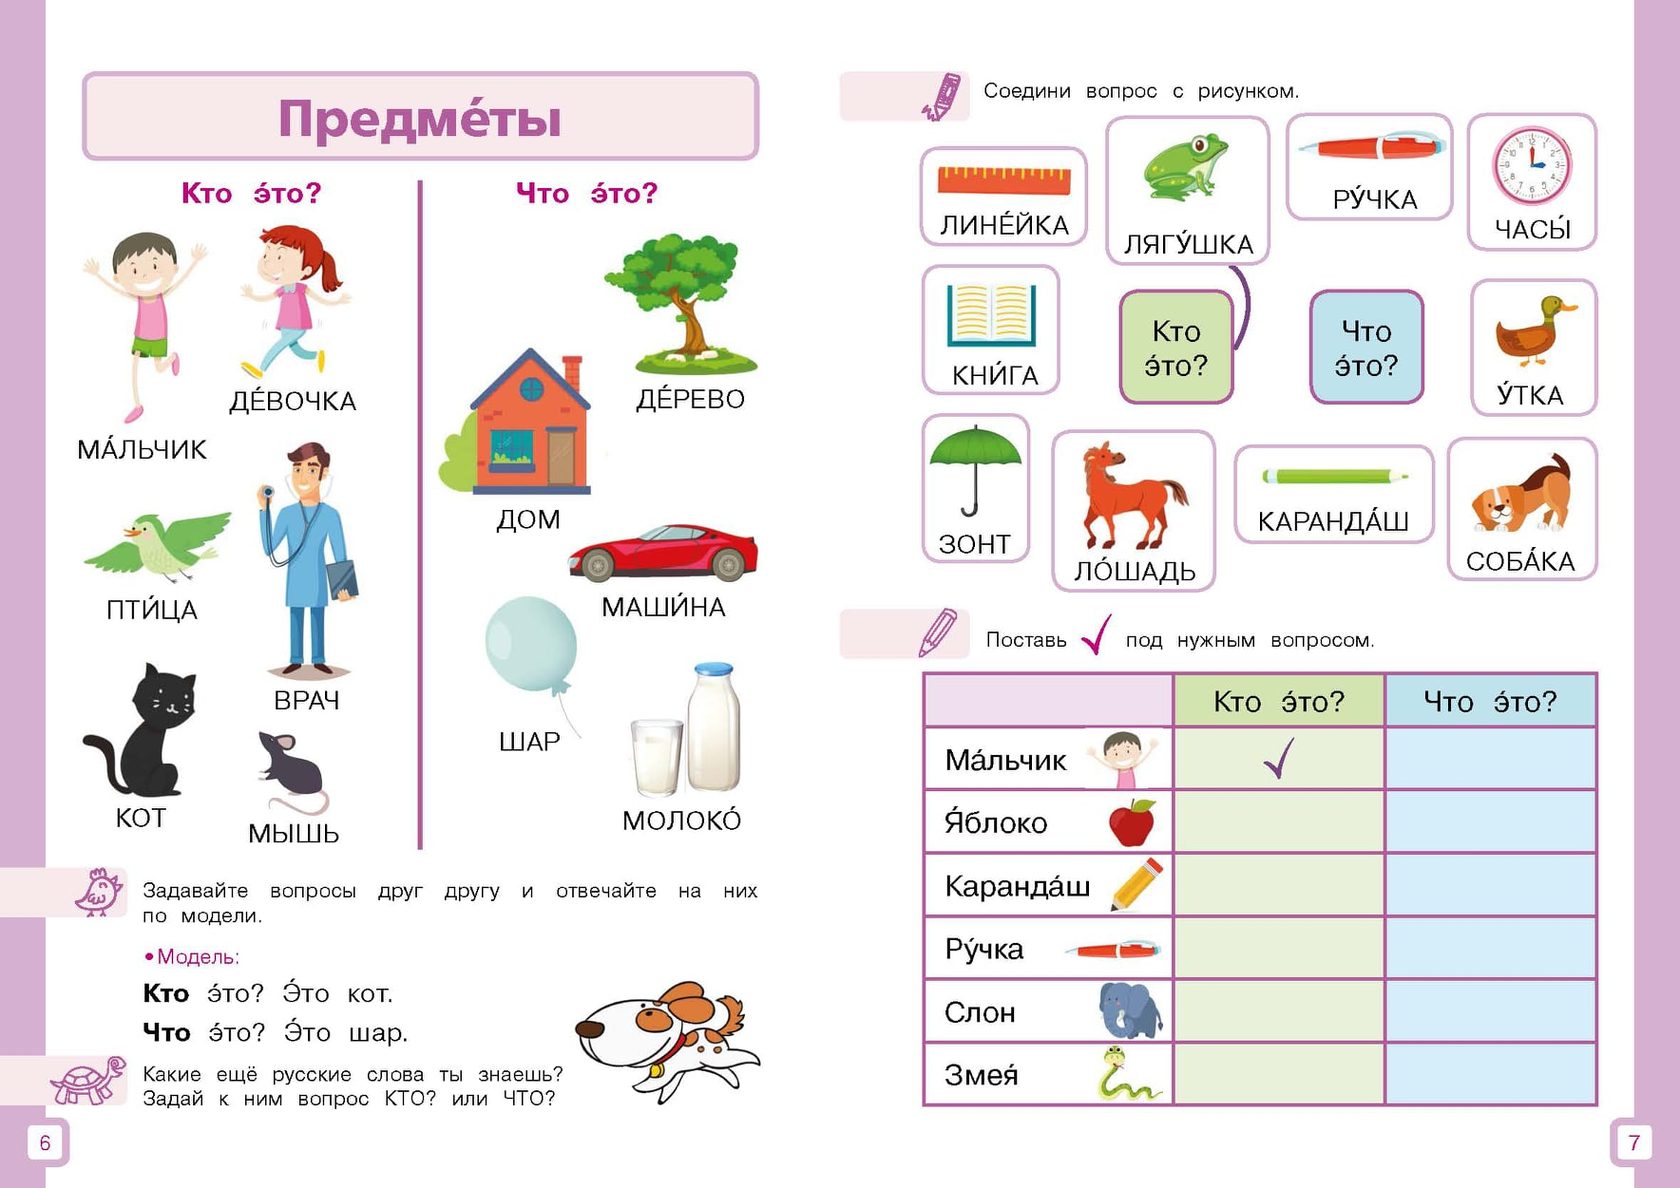 картинки для изучения русского языка для иностранцев